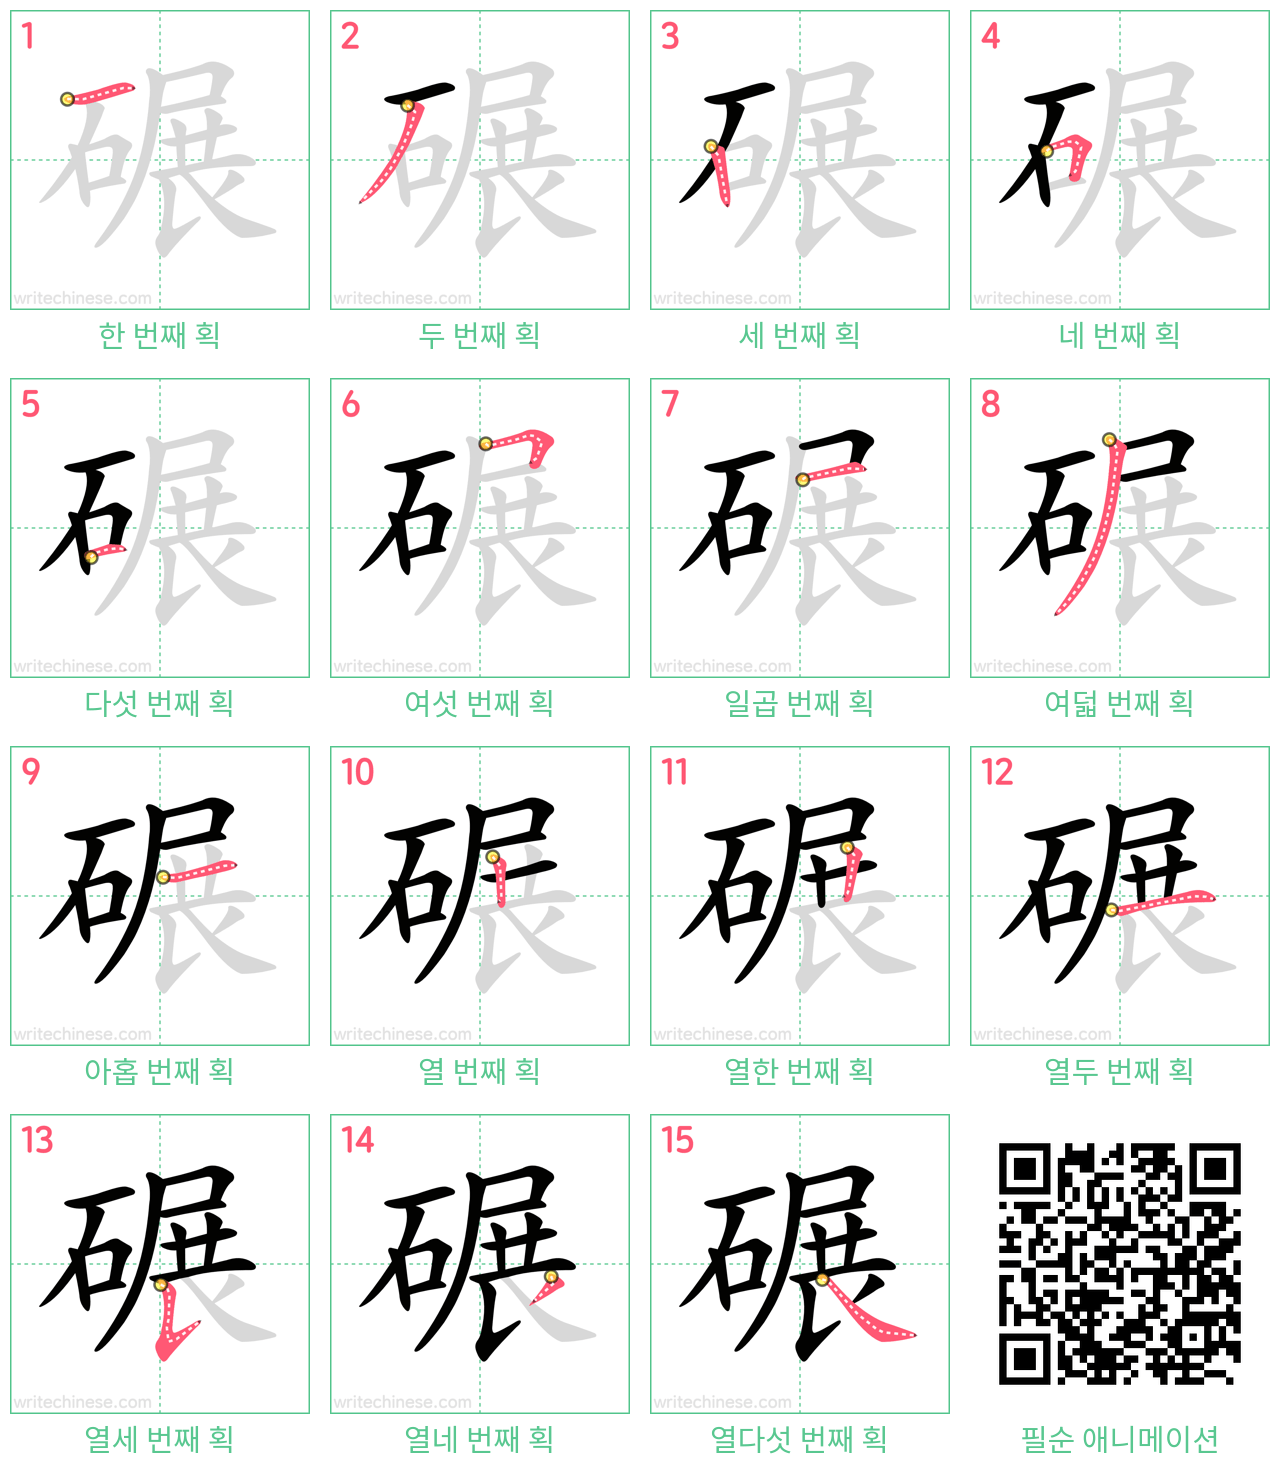 碾 step-by-step stroke order diagrams